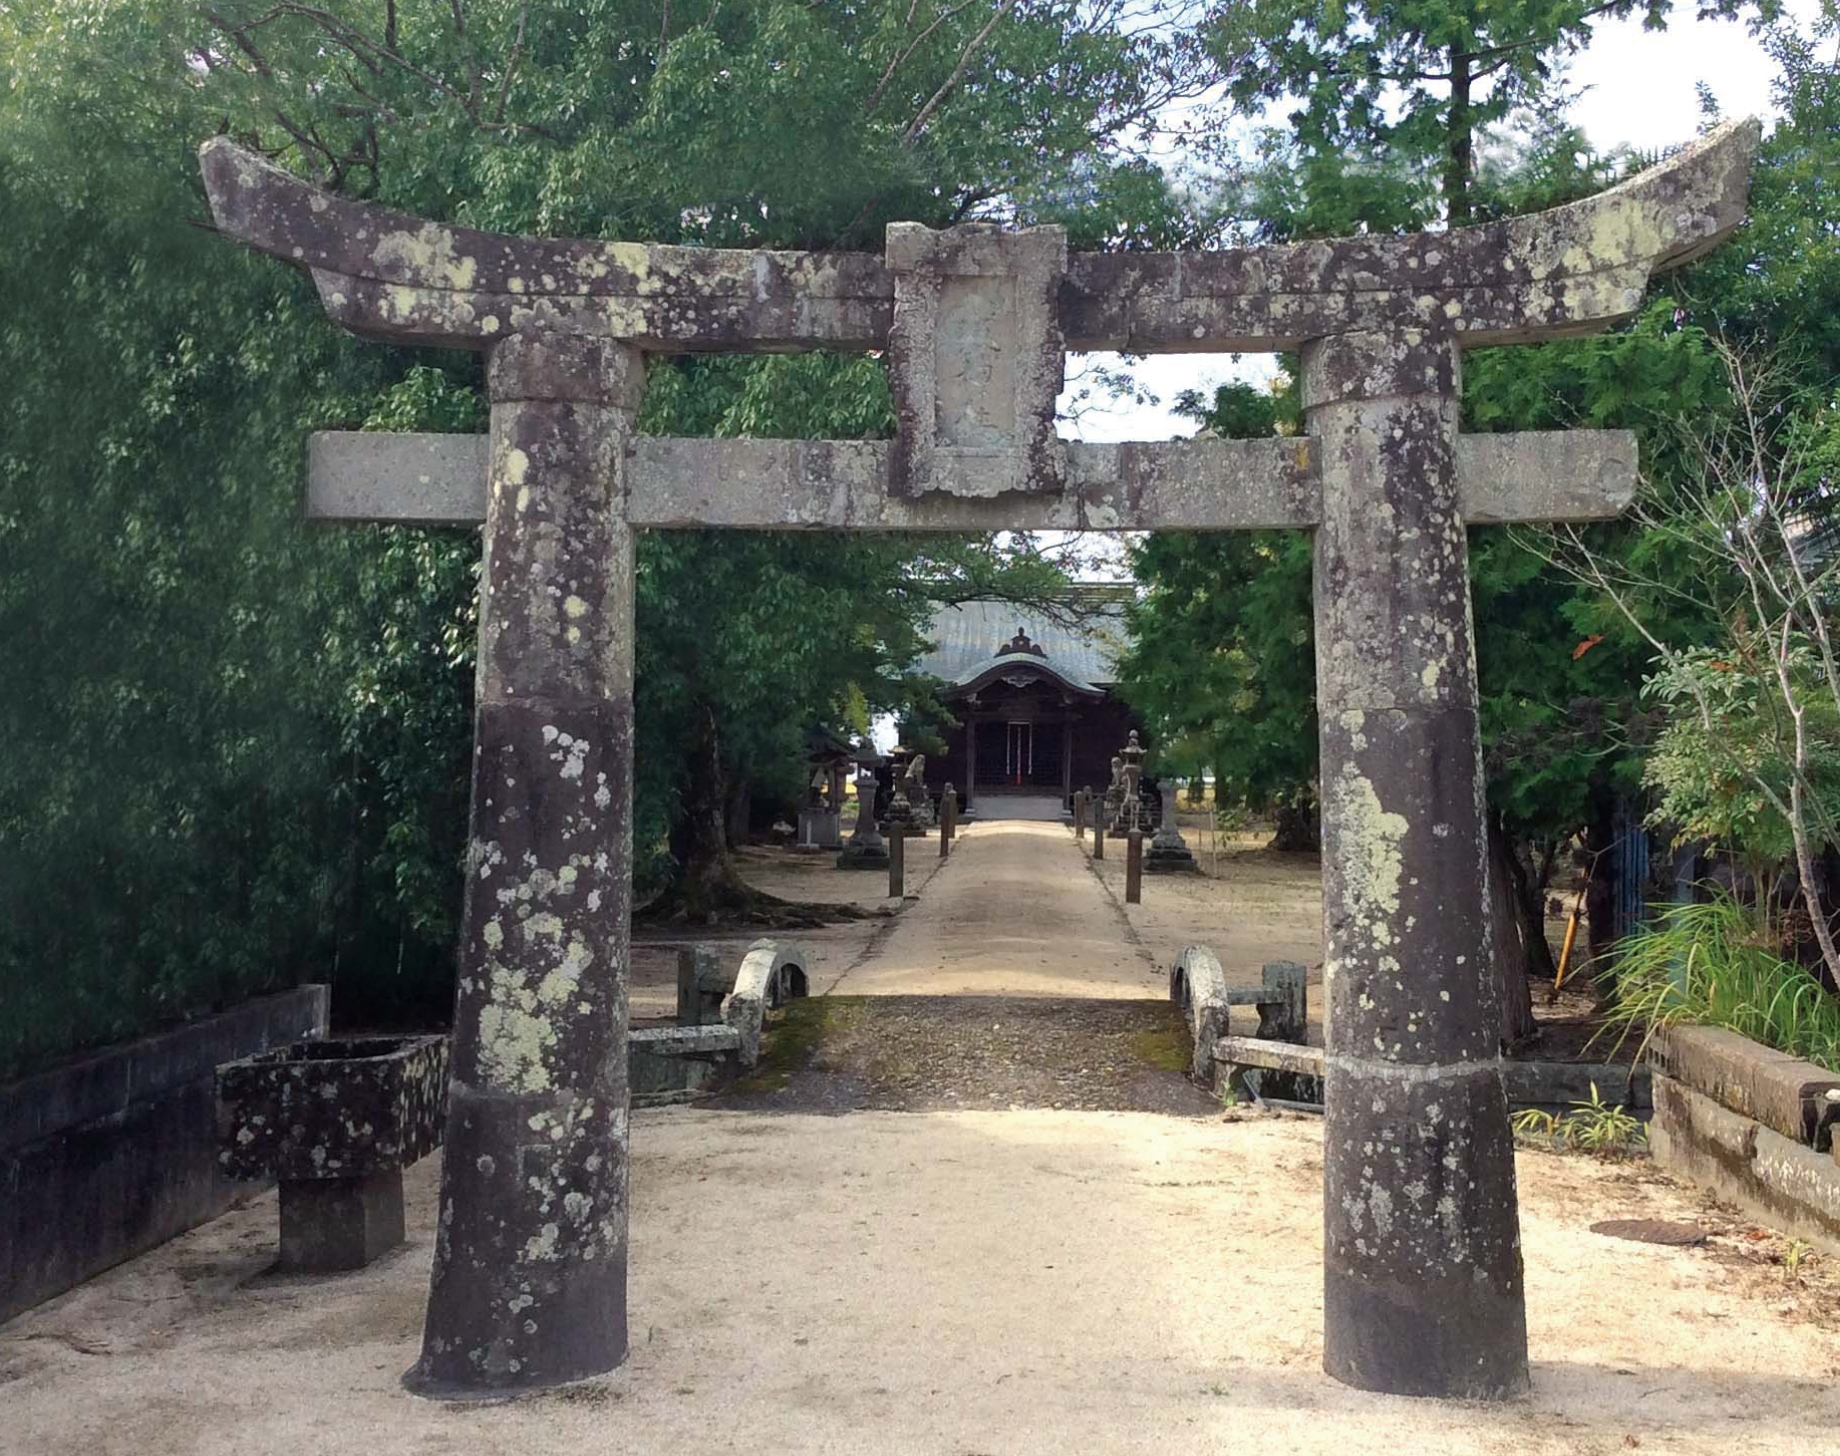 創業者江崎利一が想を練るため折にふれて訪れた郷里の八坂神社